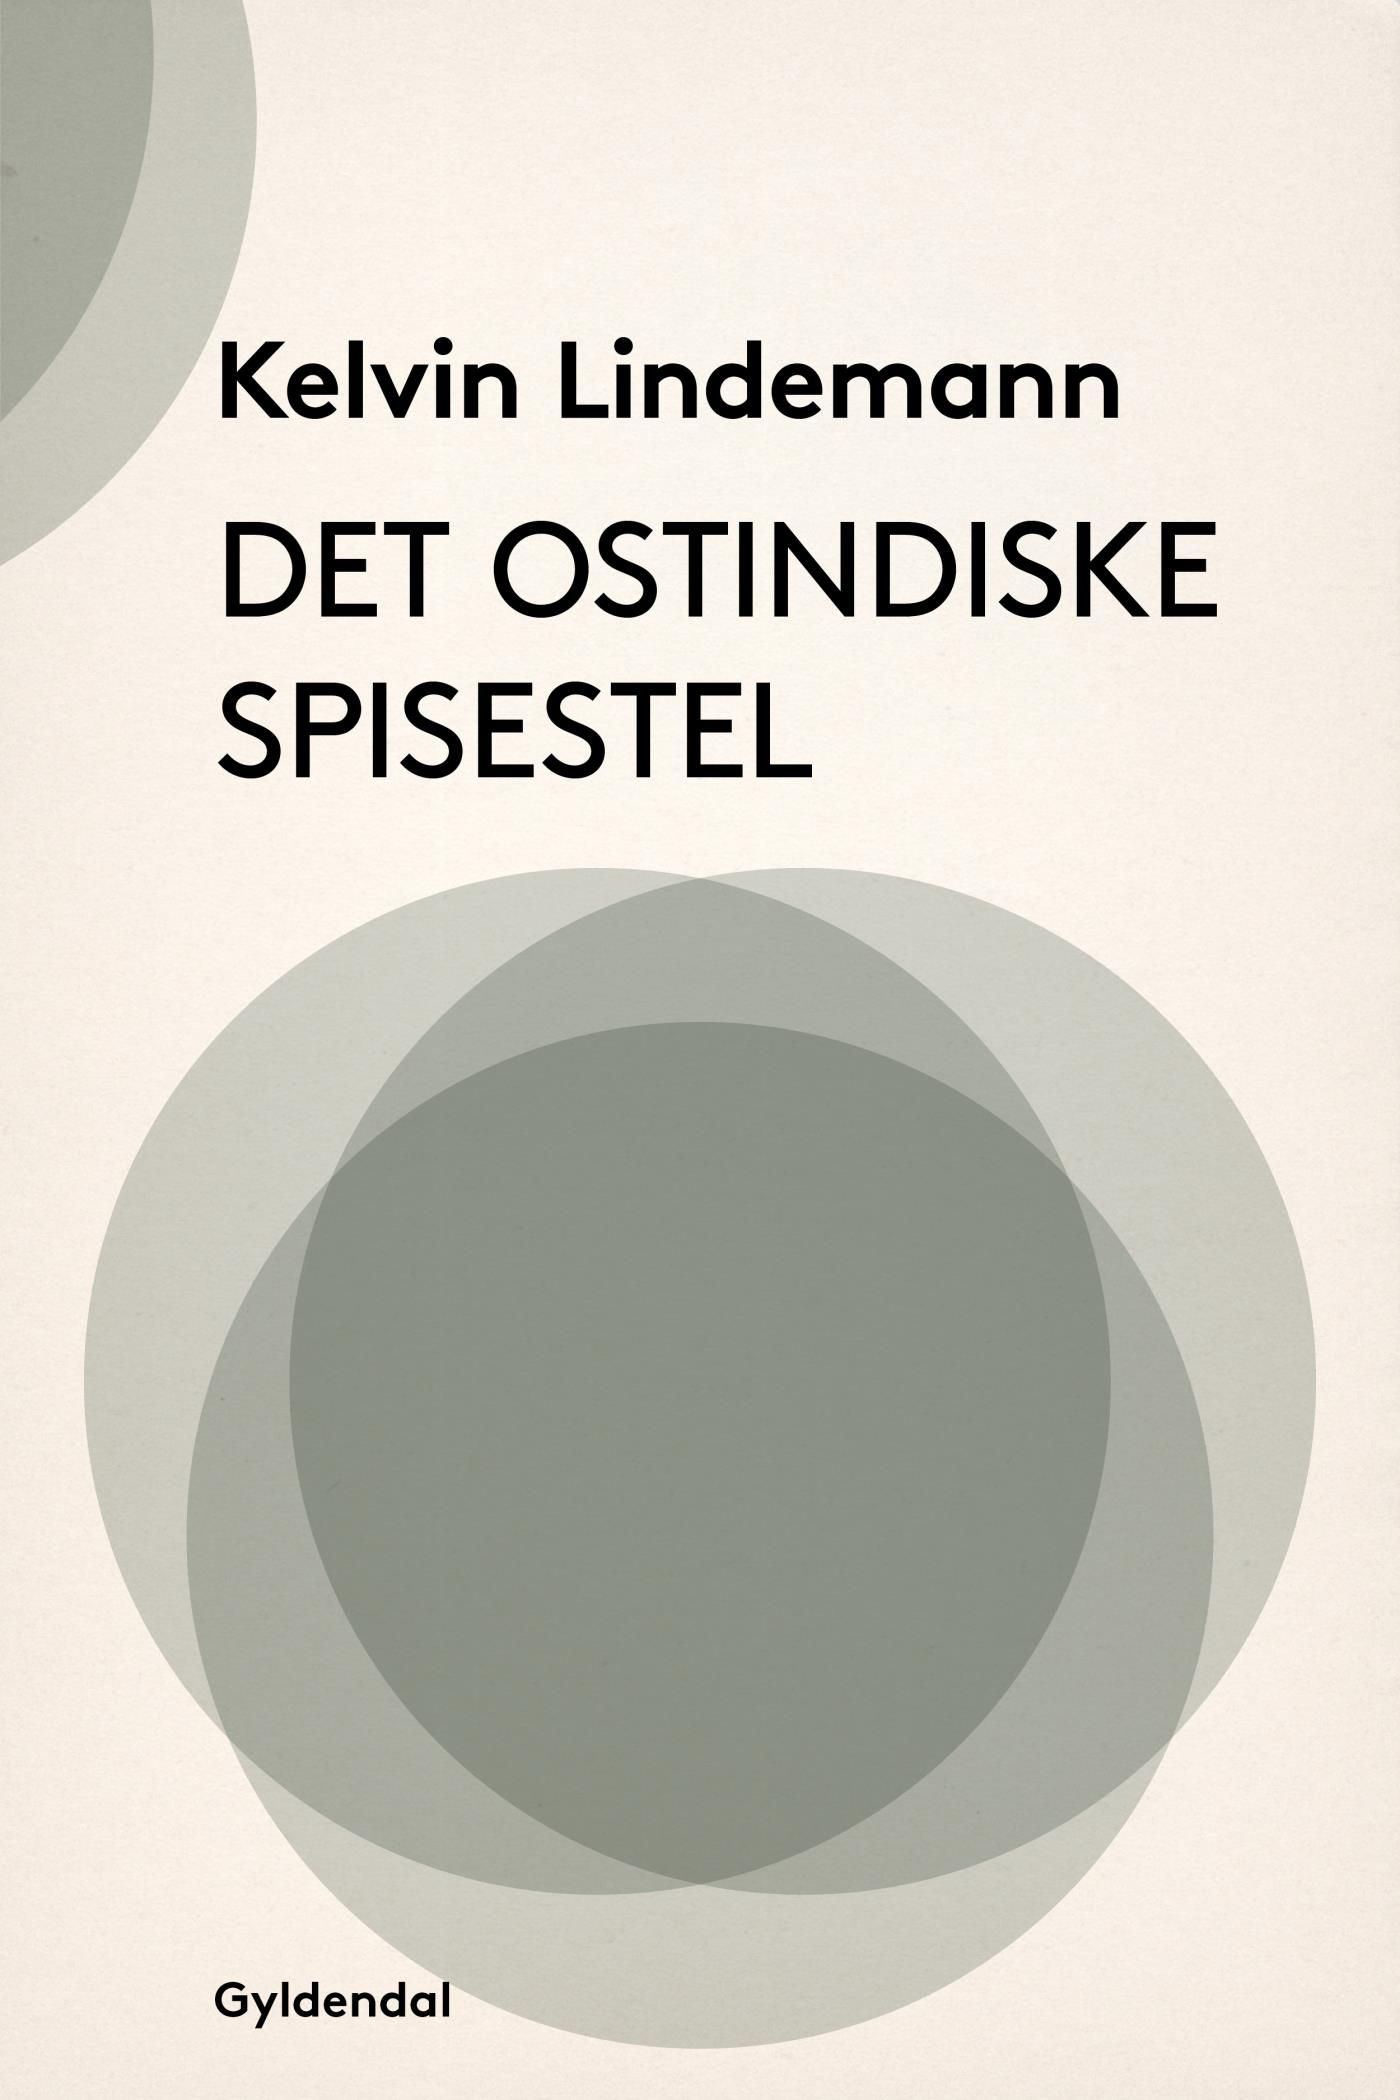 Det ostindiske spisestel, eBook by Kelvin Lindemann